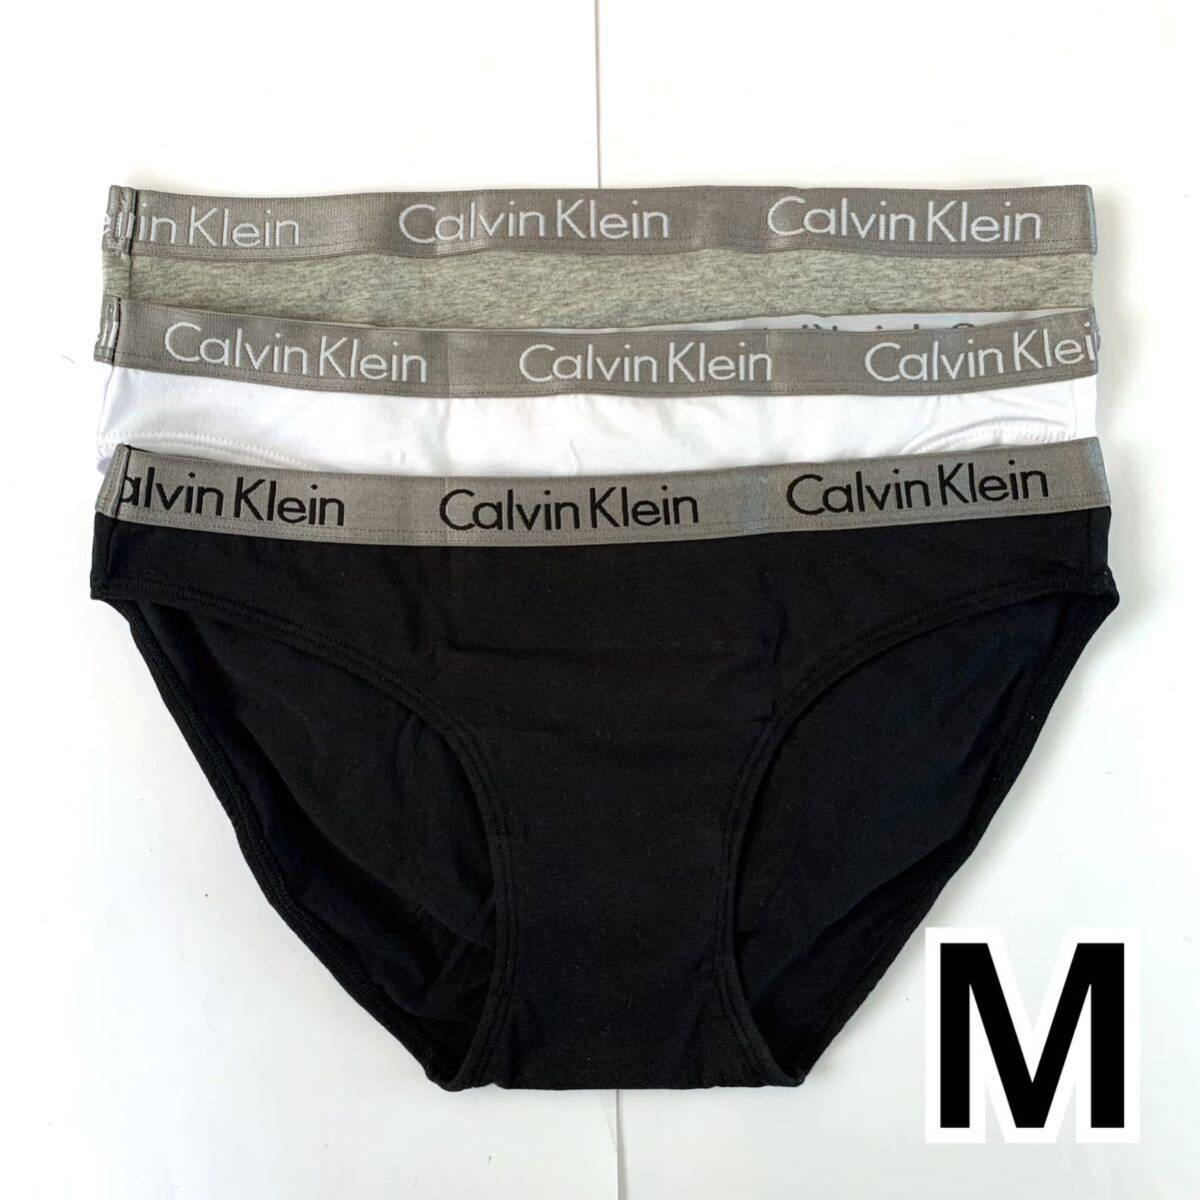 Calvin Klein アンダーウェア コットンビキニ Mサイズ 3枚セット レディース 送料無料 最短発送 下着 女性下着 ショーツ パンツ パンティーの画像3